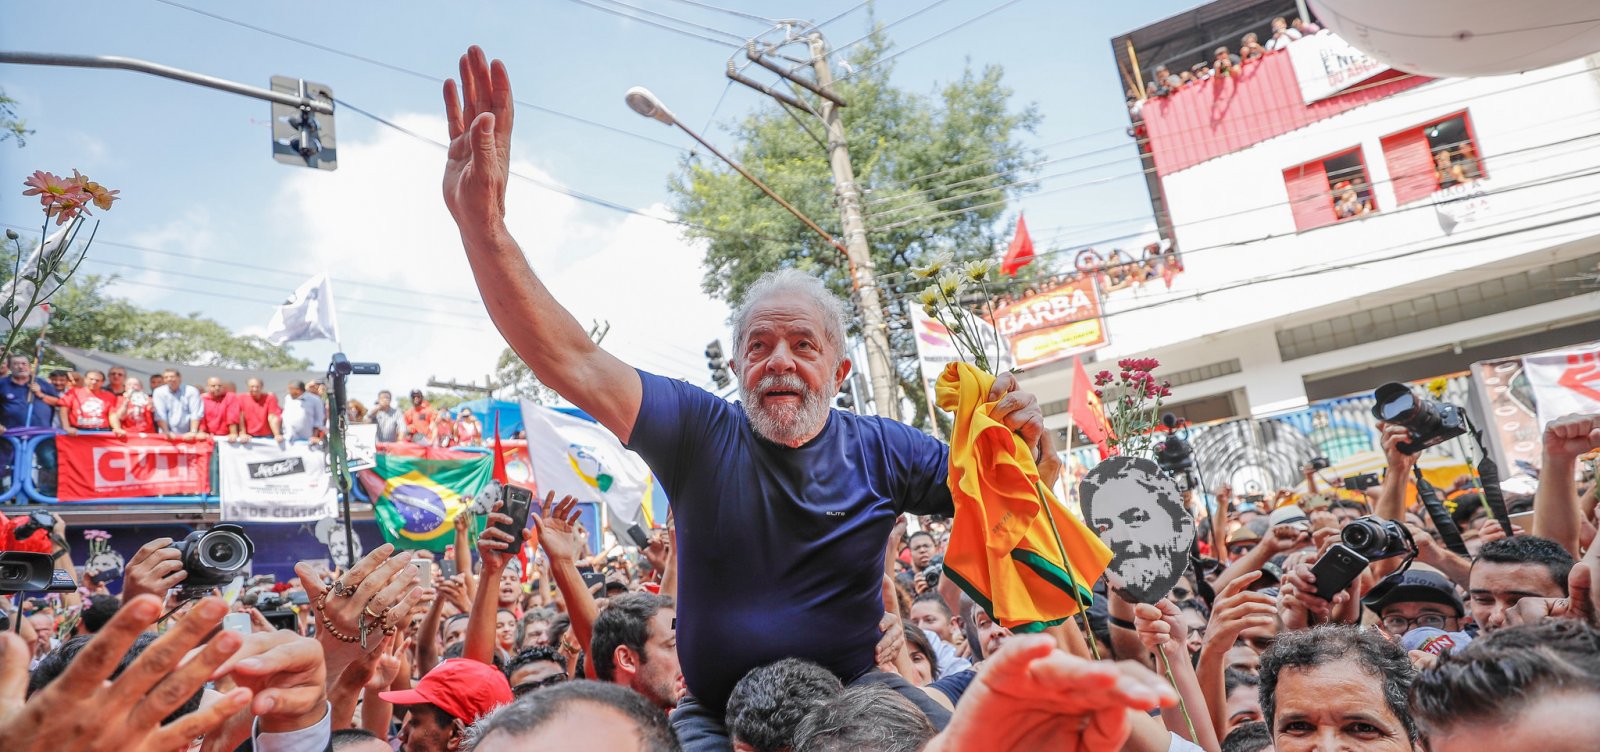 ['Quero democracia, não impunidade', escreve Lula em artigo do NY Times]